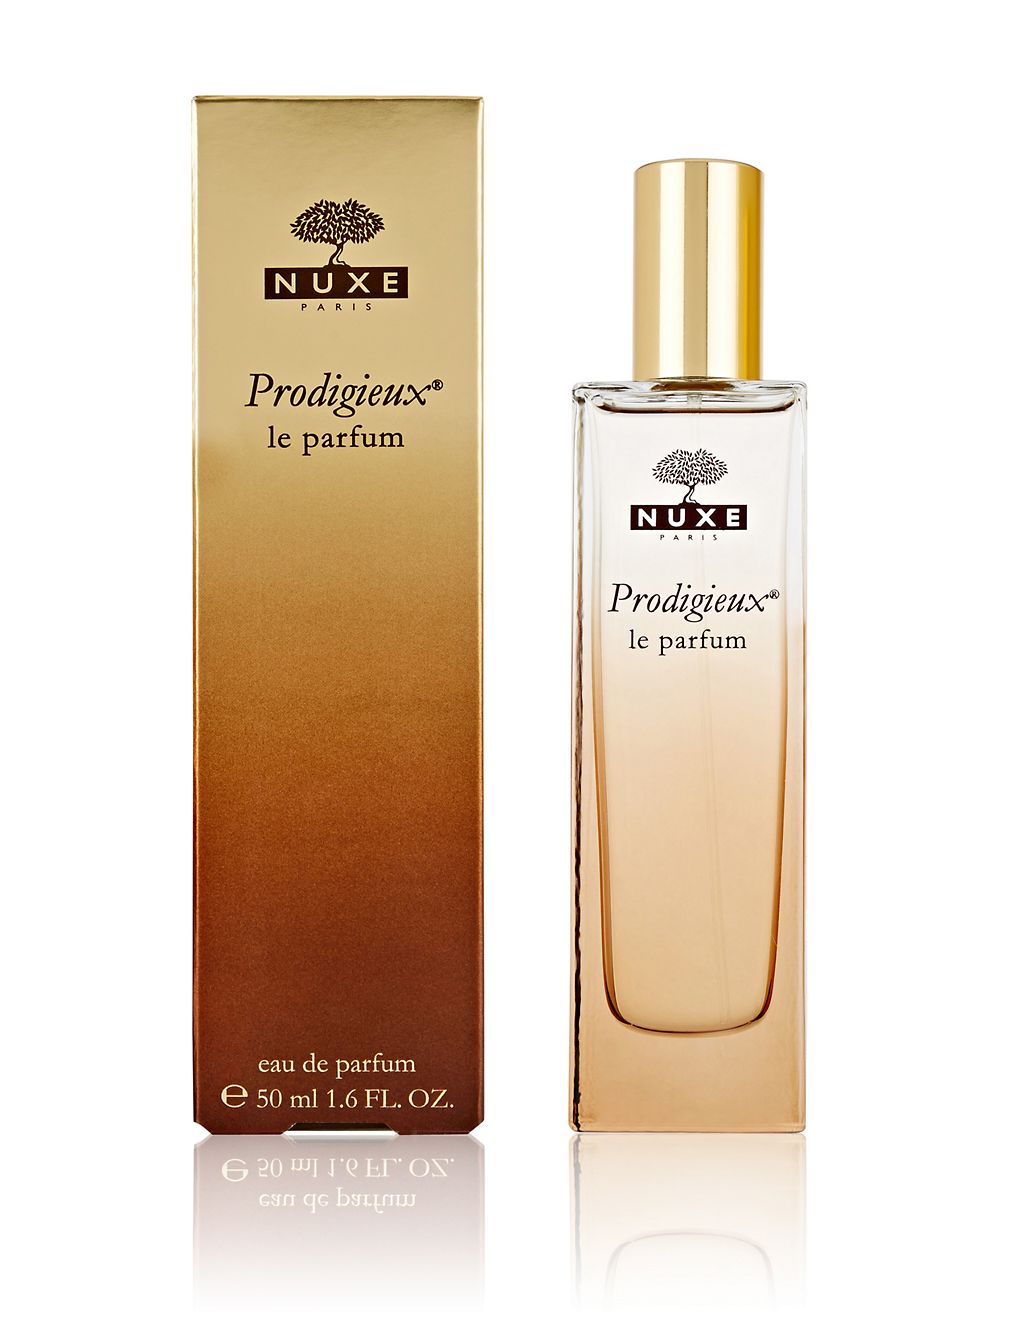 Prodigieux Le Parfum 50ml 1 of 3